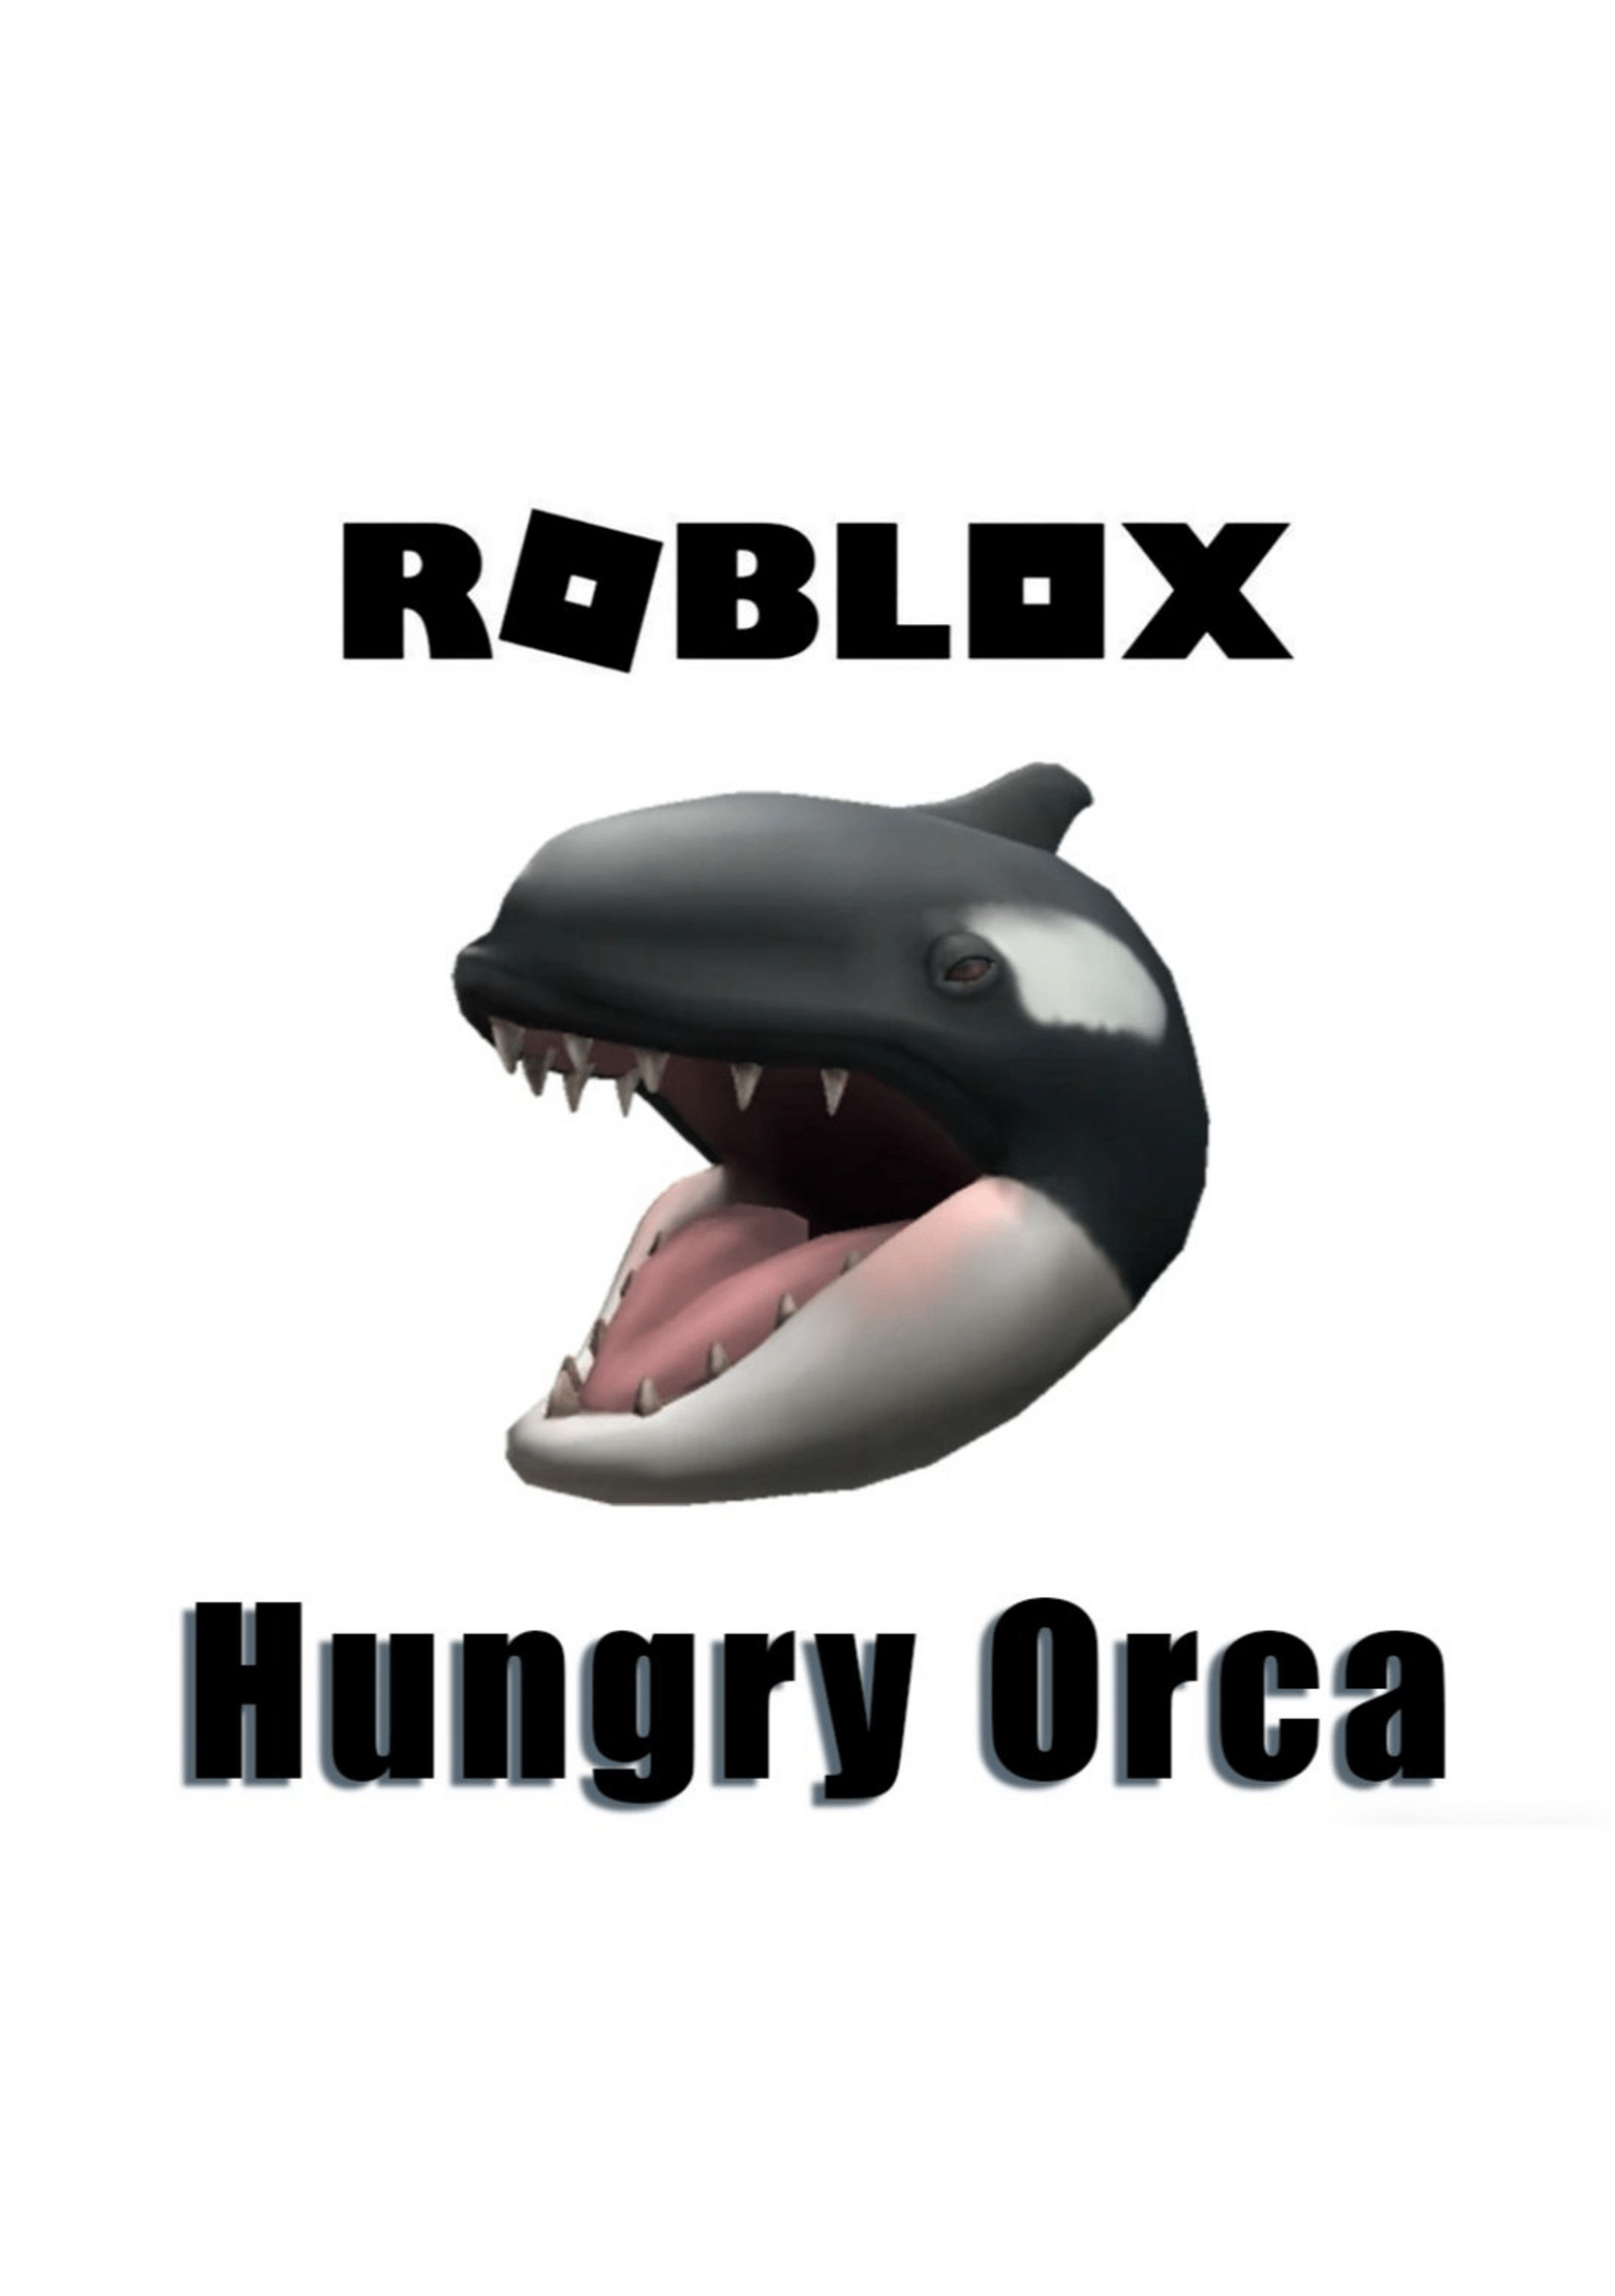 Купить 🔑Roblox: КОД Hungry Orca ✓ 100% АКУЛА недорого, выбор у разных  продавцов с разными способами оплаты. Моментальная доставка.